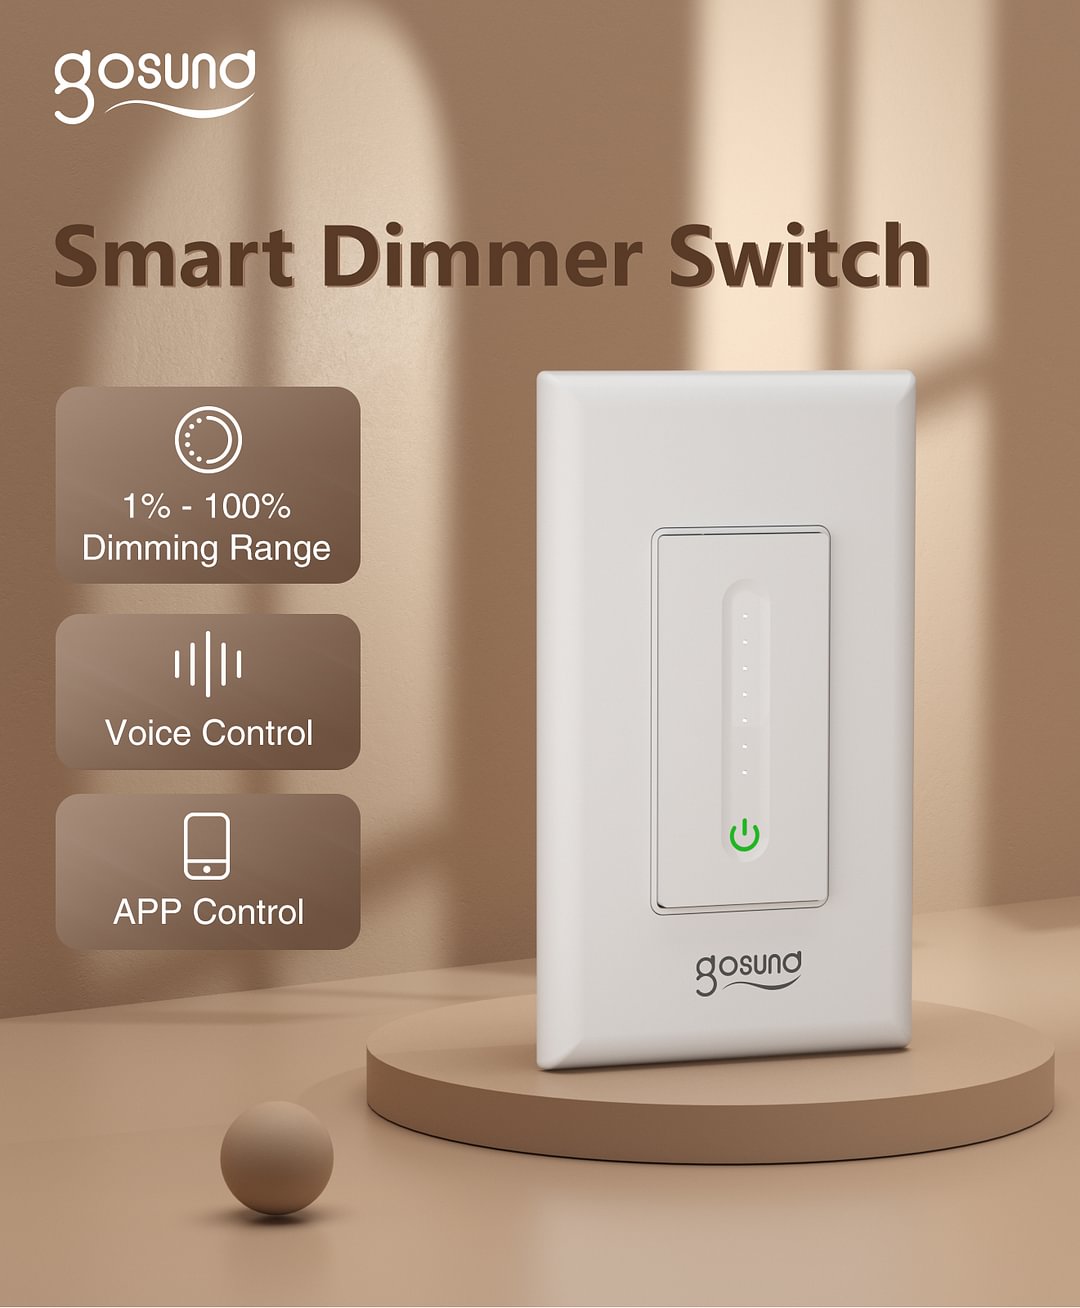 Gosund Smart Dimmer Switch SW2